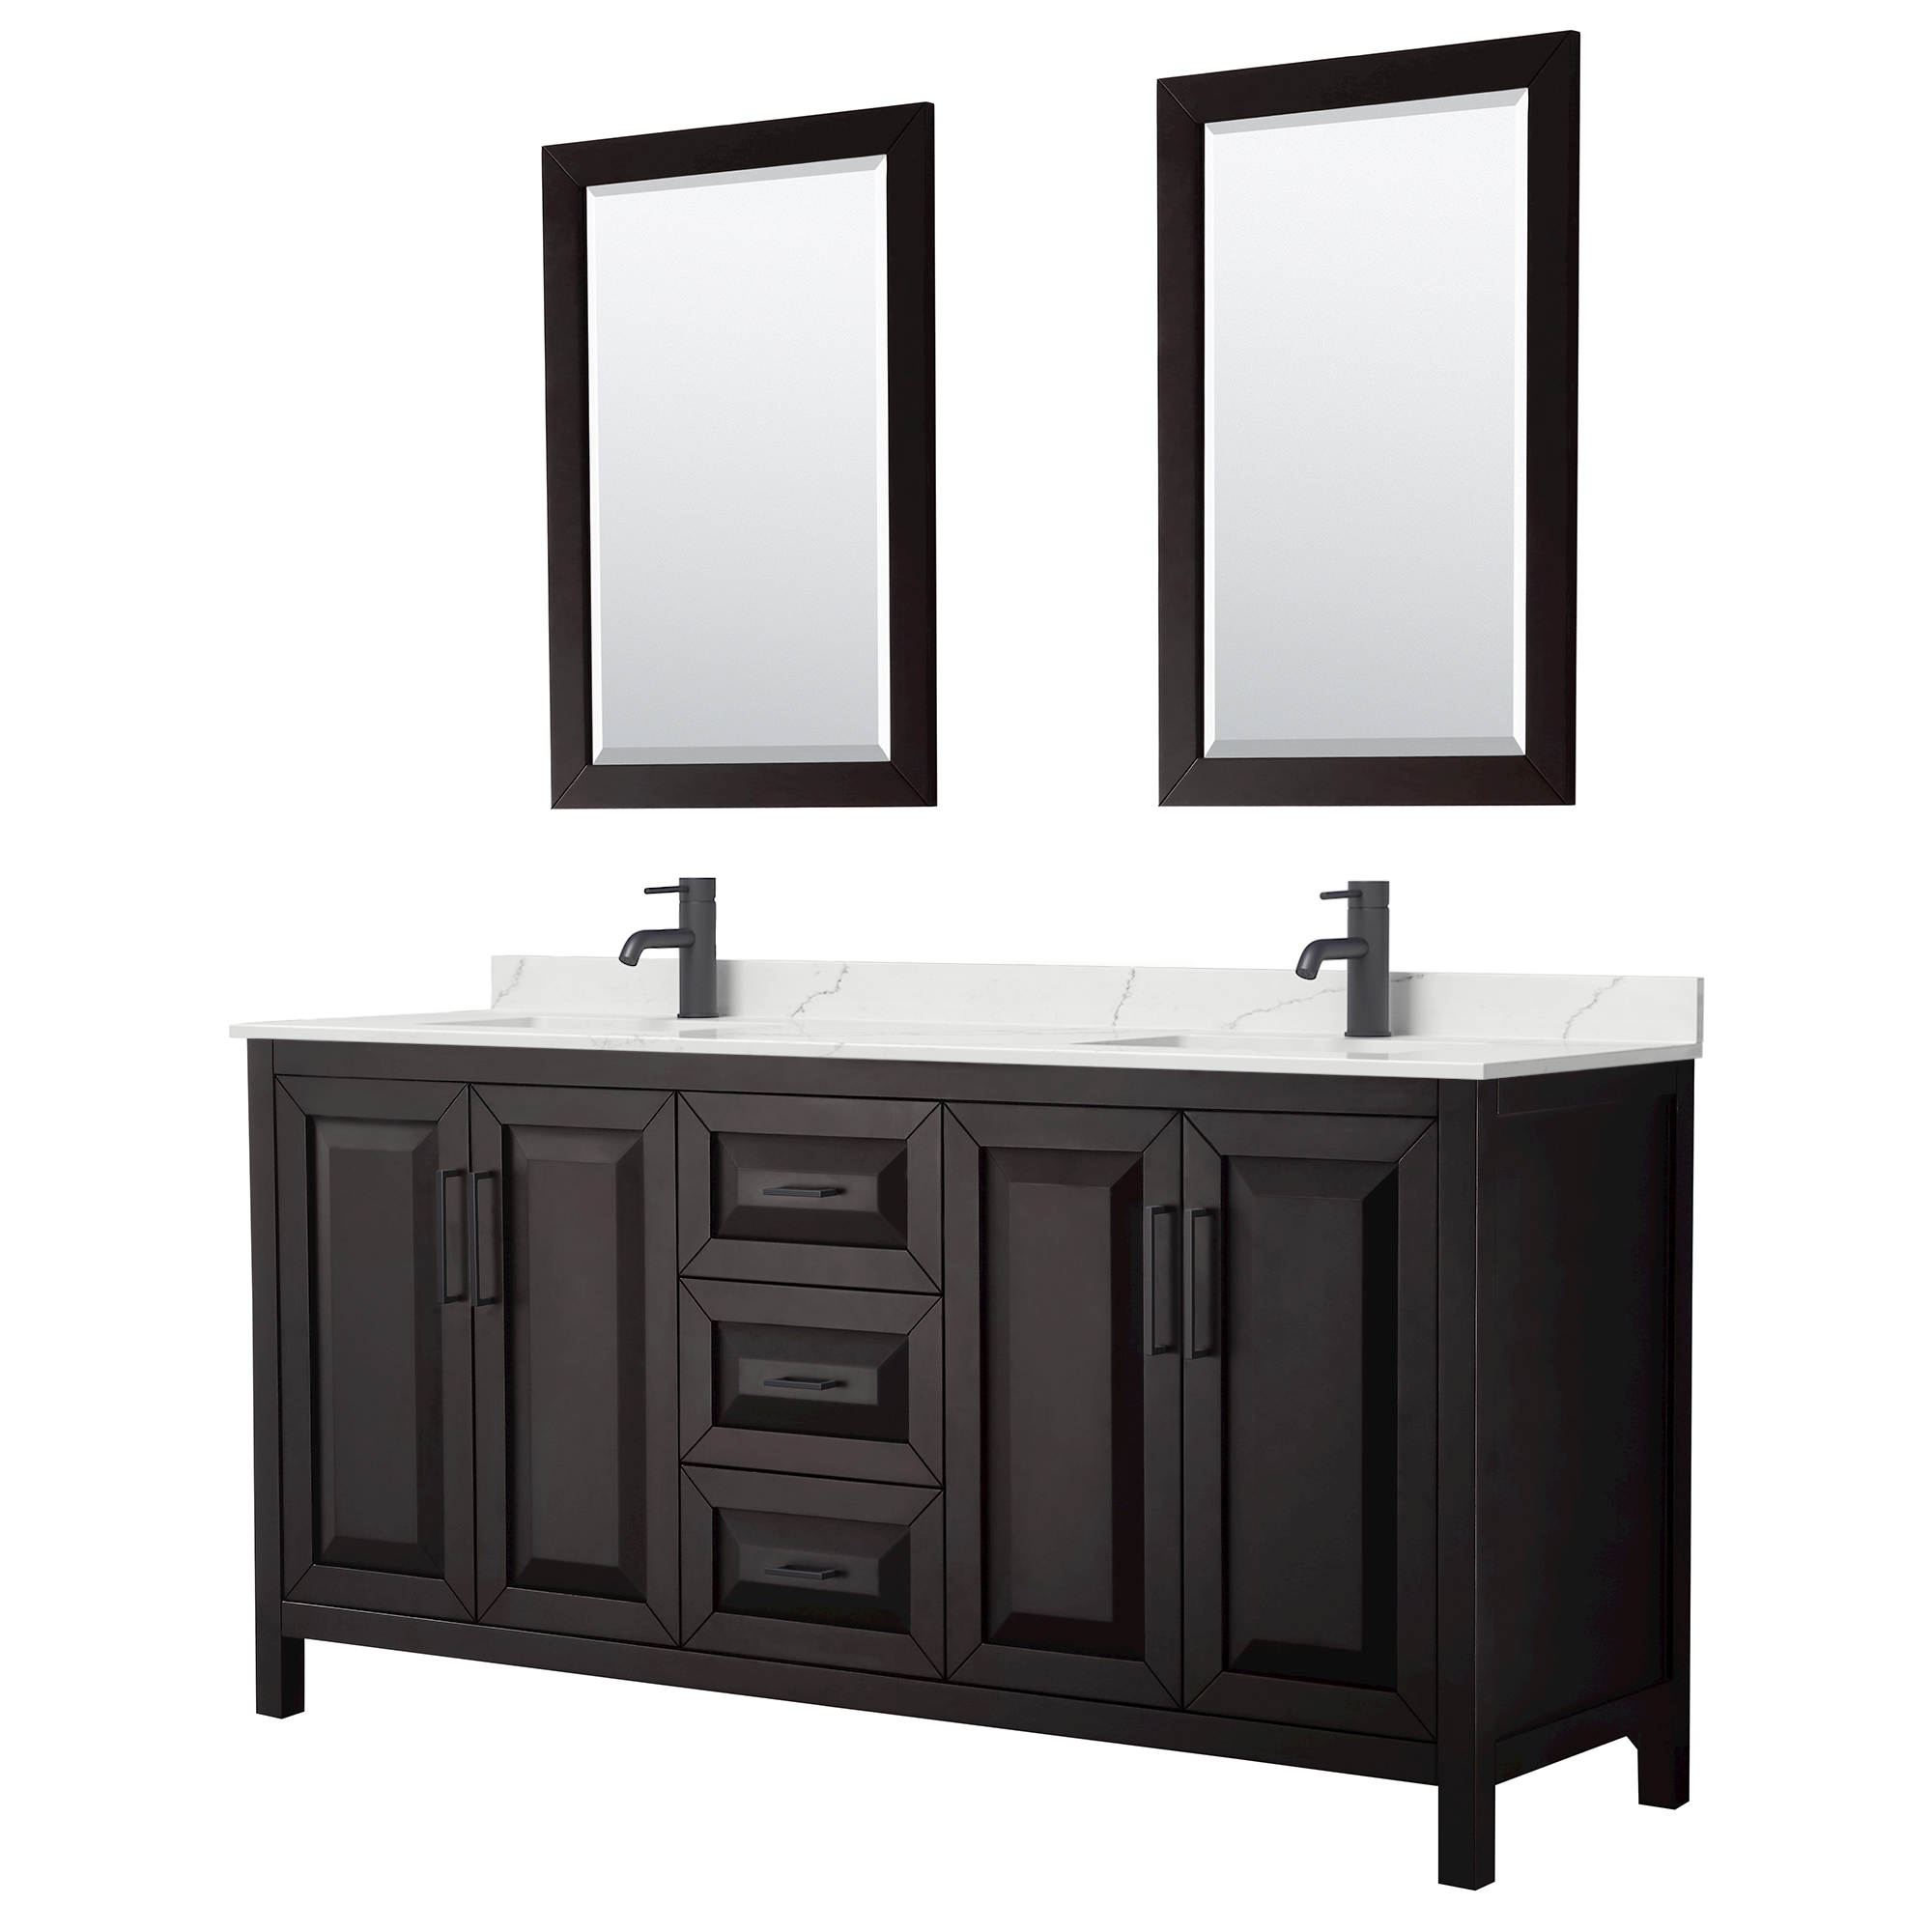 daria 72" double bathroom vanity by wyndham collection - dark espresso